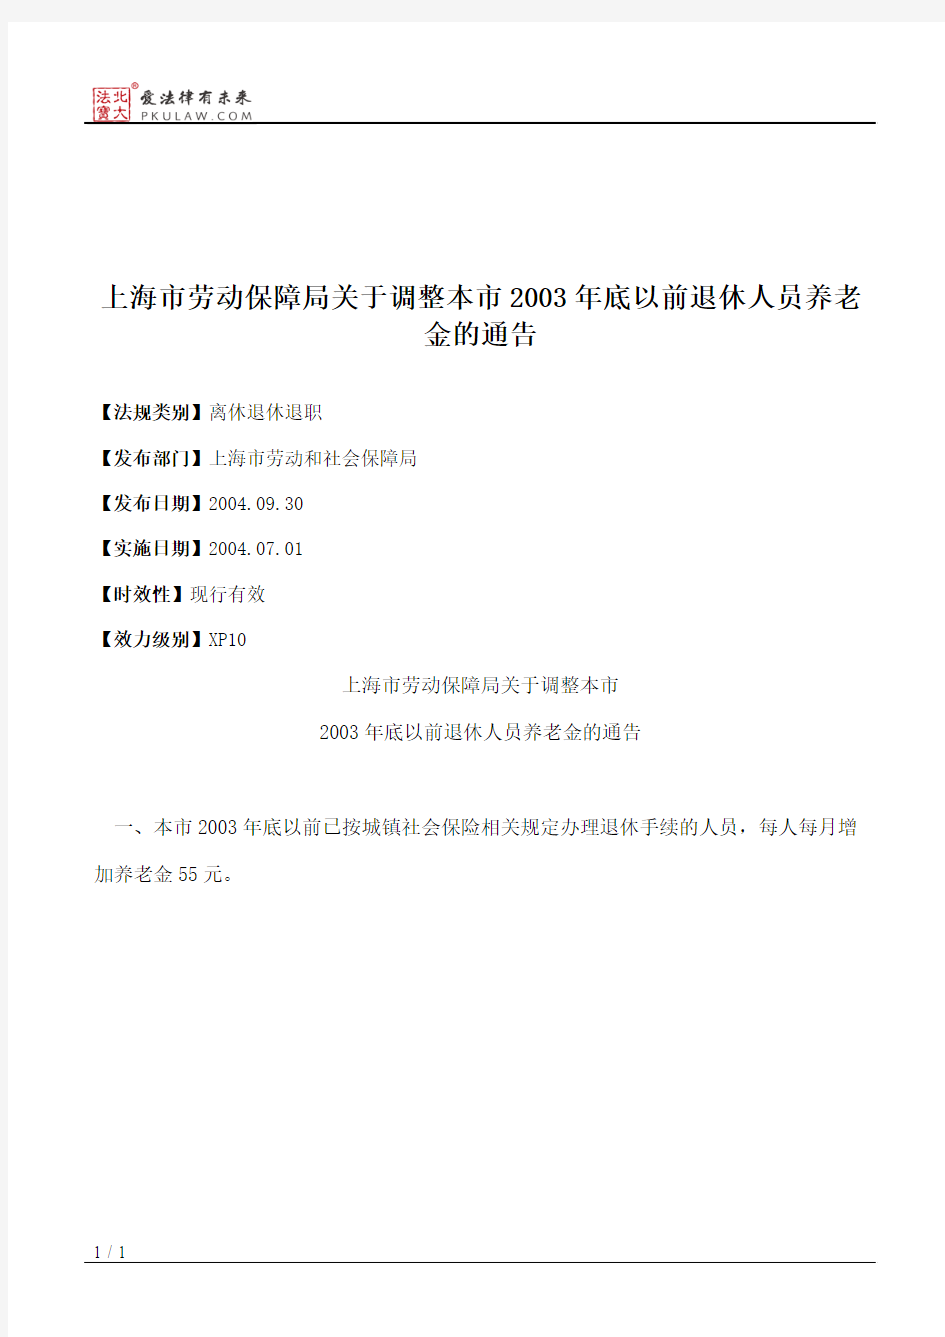 上海市劳动保障局关于调整本市2003年底以前退休人员养老金的通告